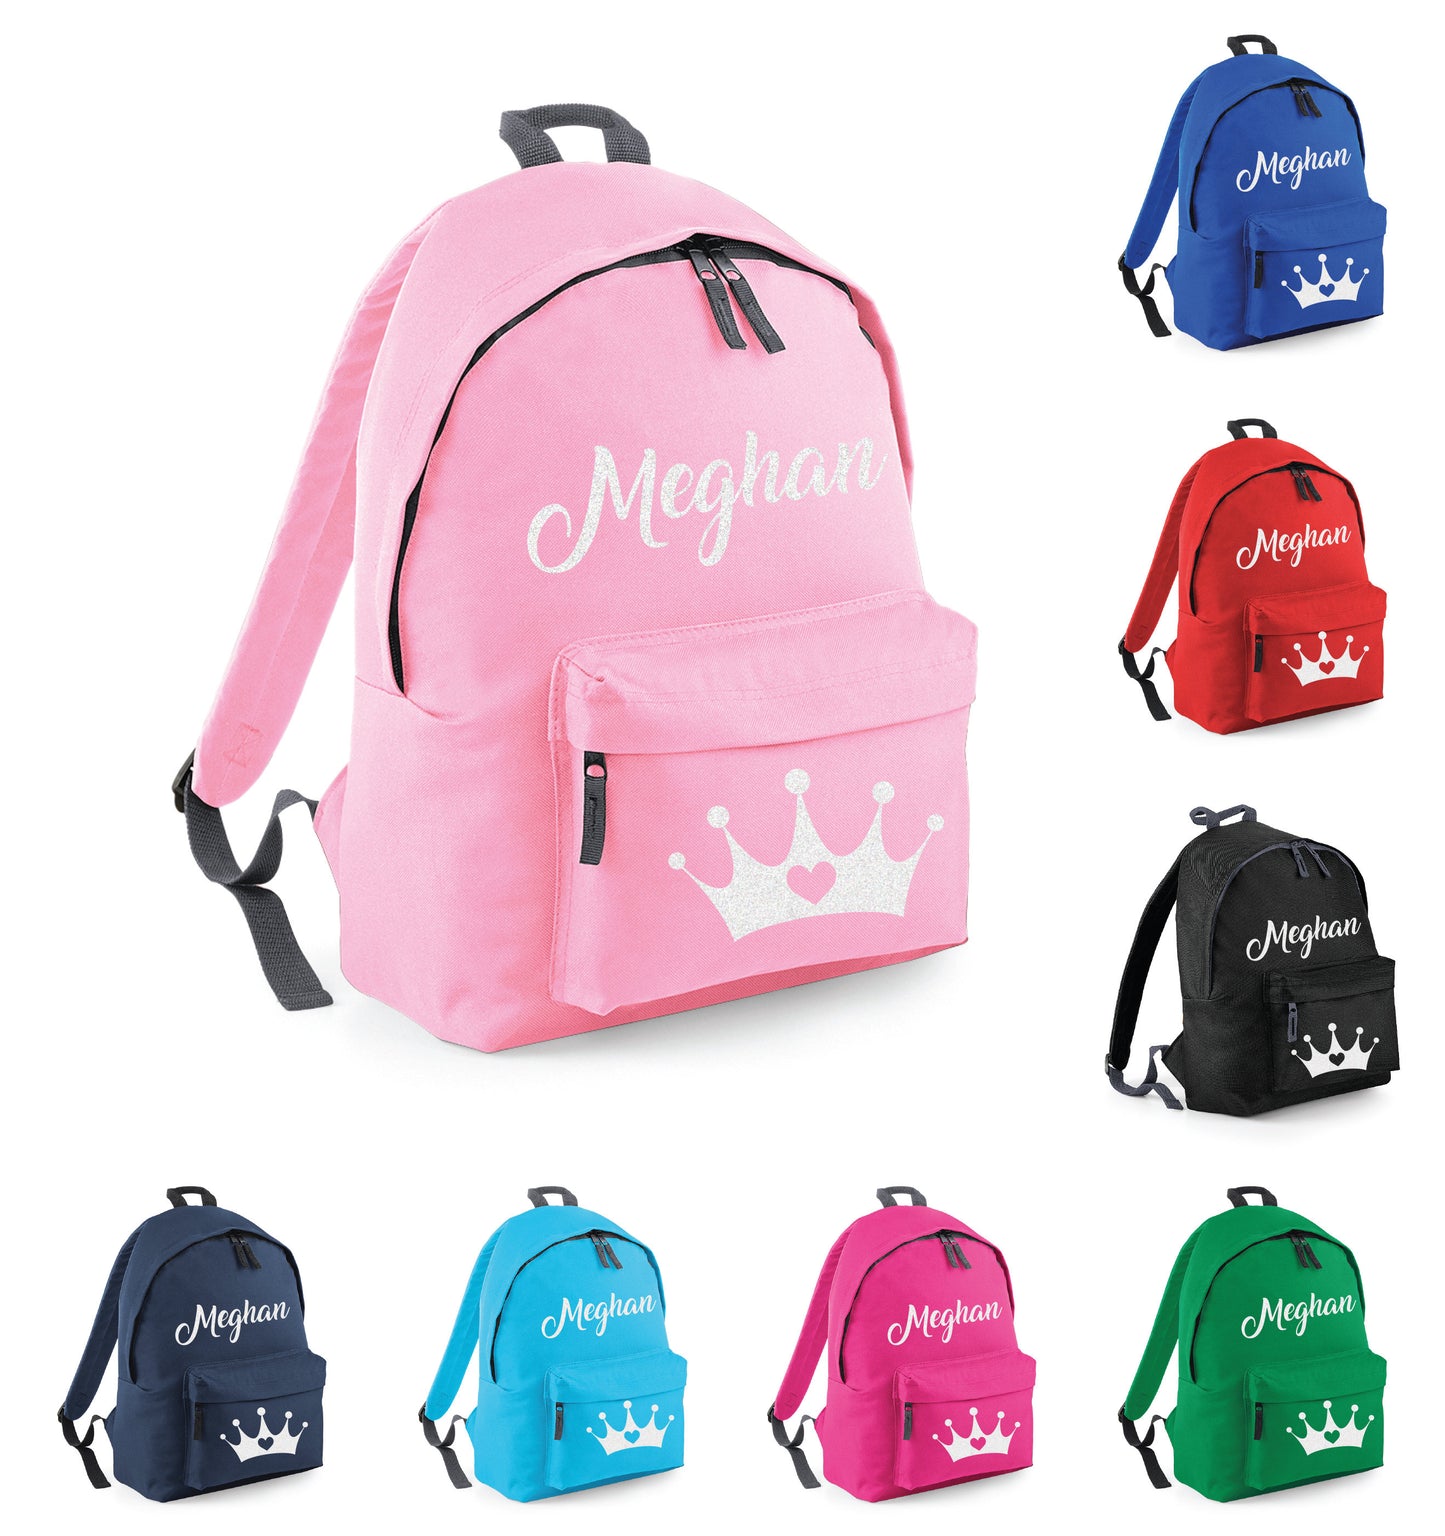 Kids Personalised School Bag BG125 - Crown Heart Tiara Royal Any Name, Customised